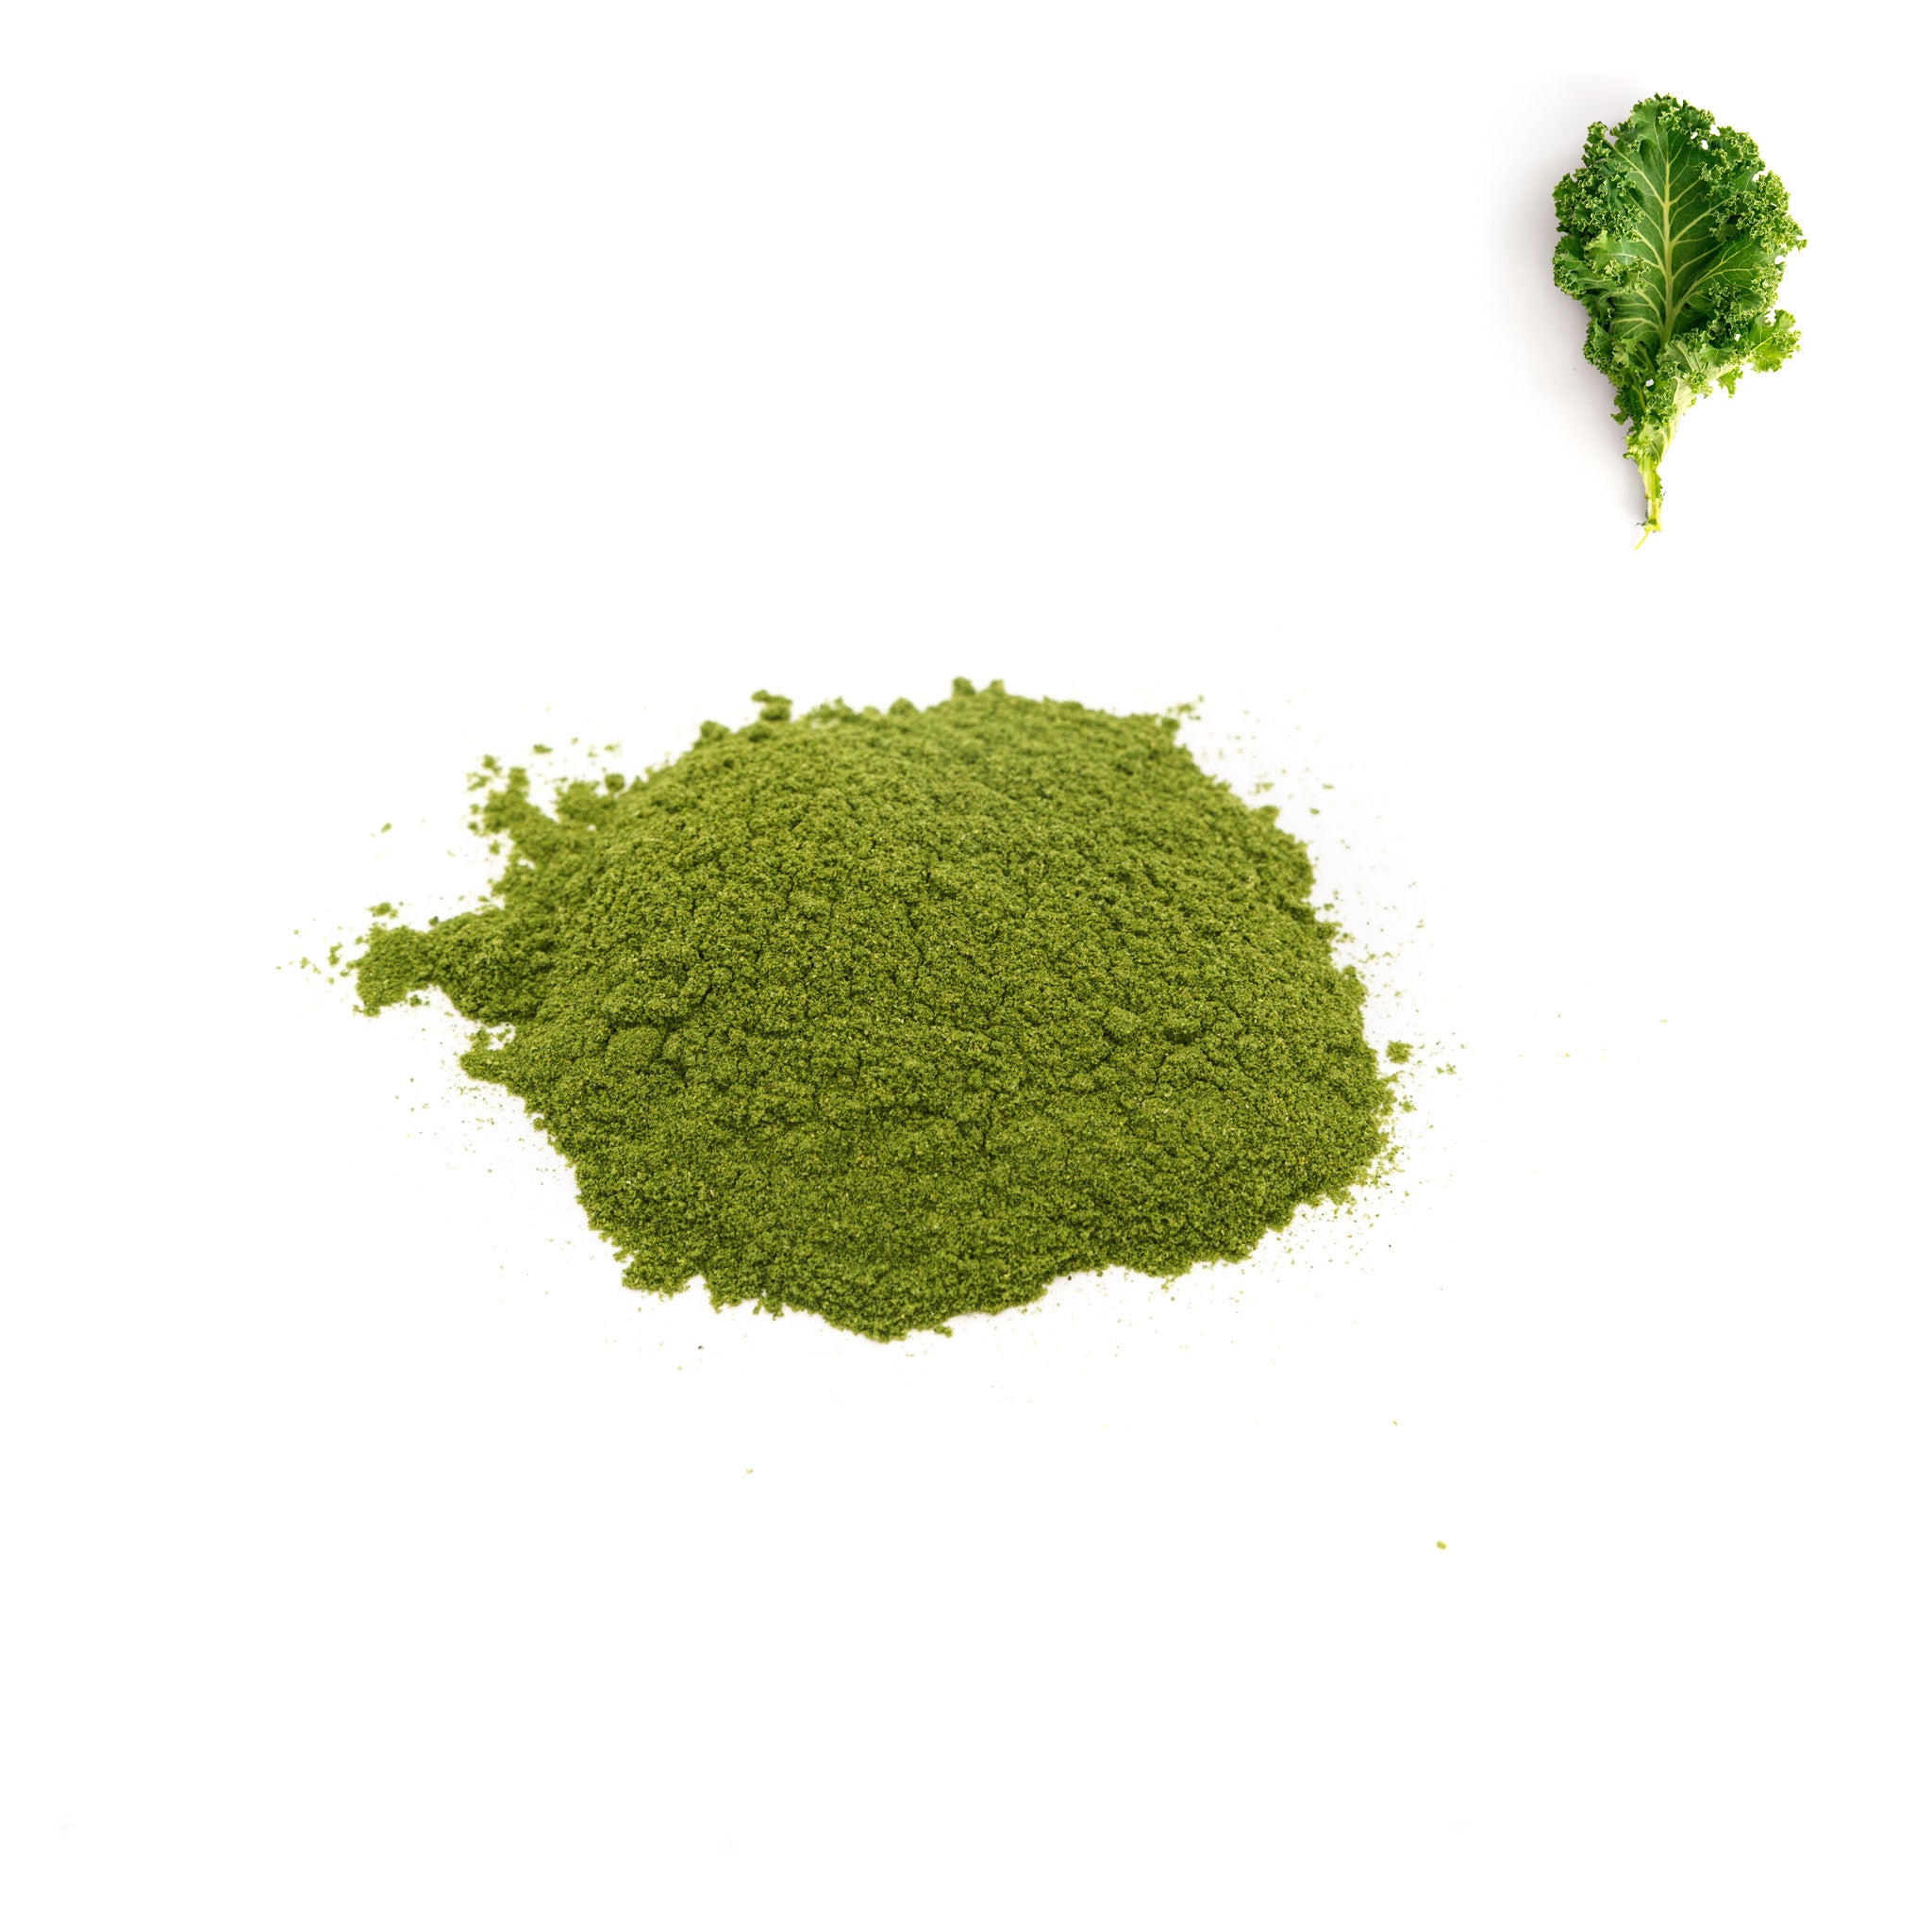 Freeze-dried Kale Powder